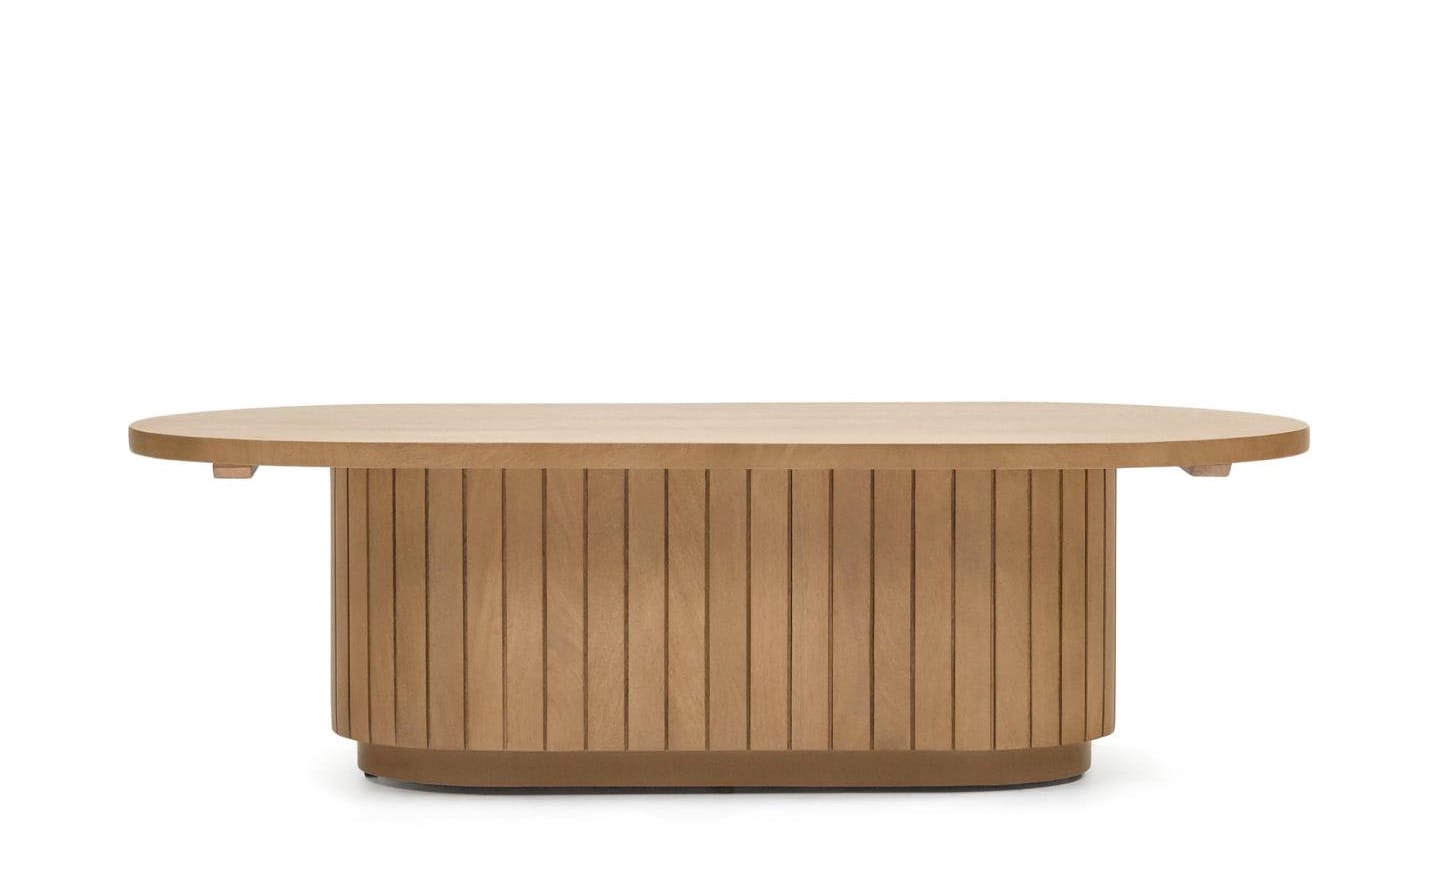 Mesa de Centro Licia, design artesanal em madeira maciça de mangueira, formas arredondadas únicas, dinamismo e elegância para interiores.